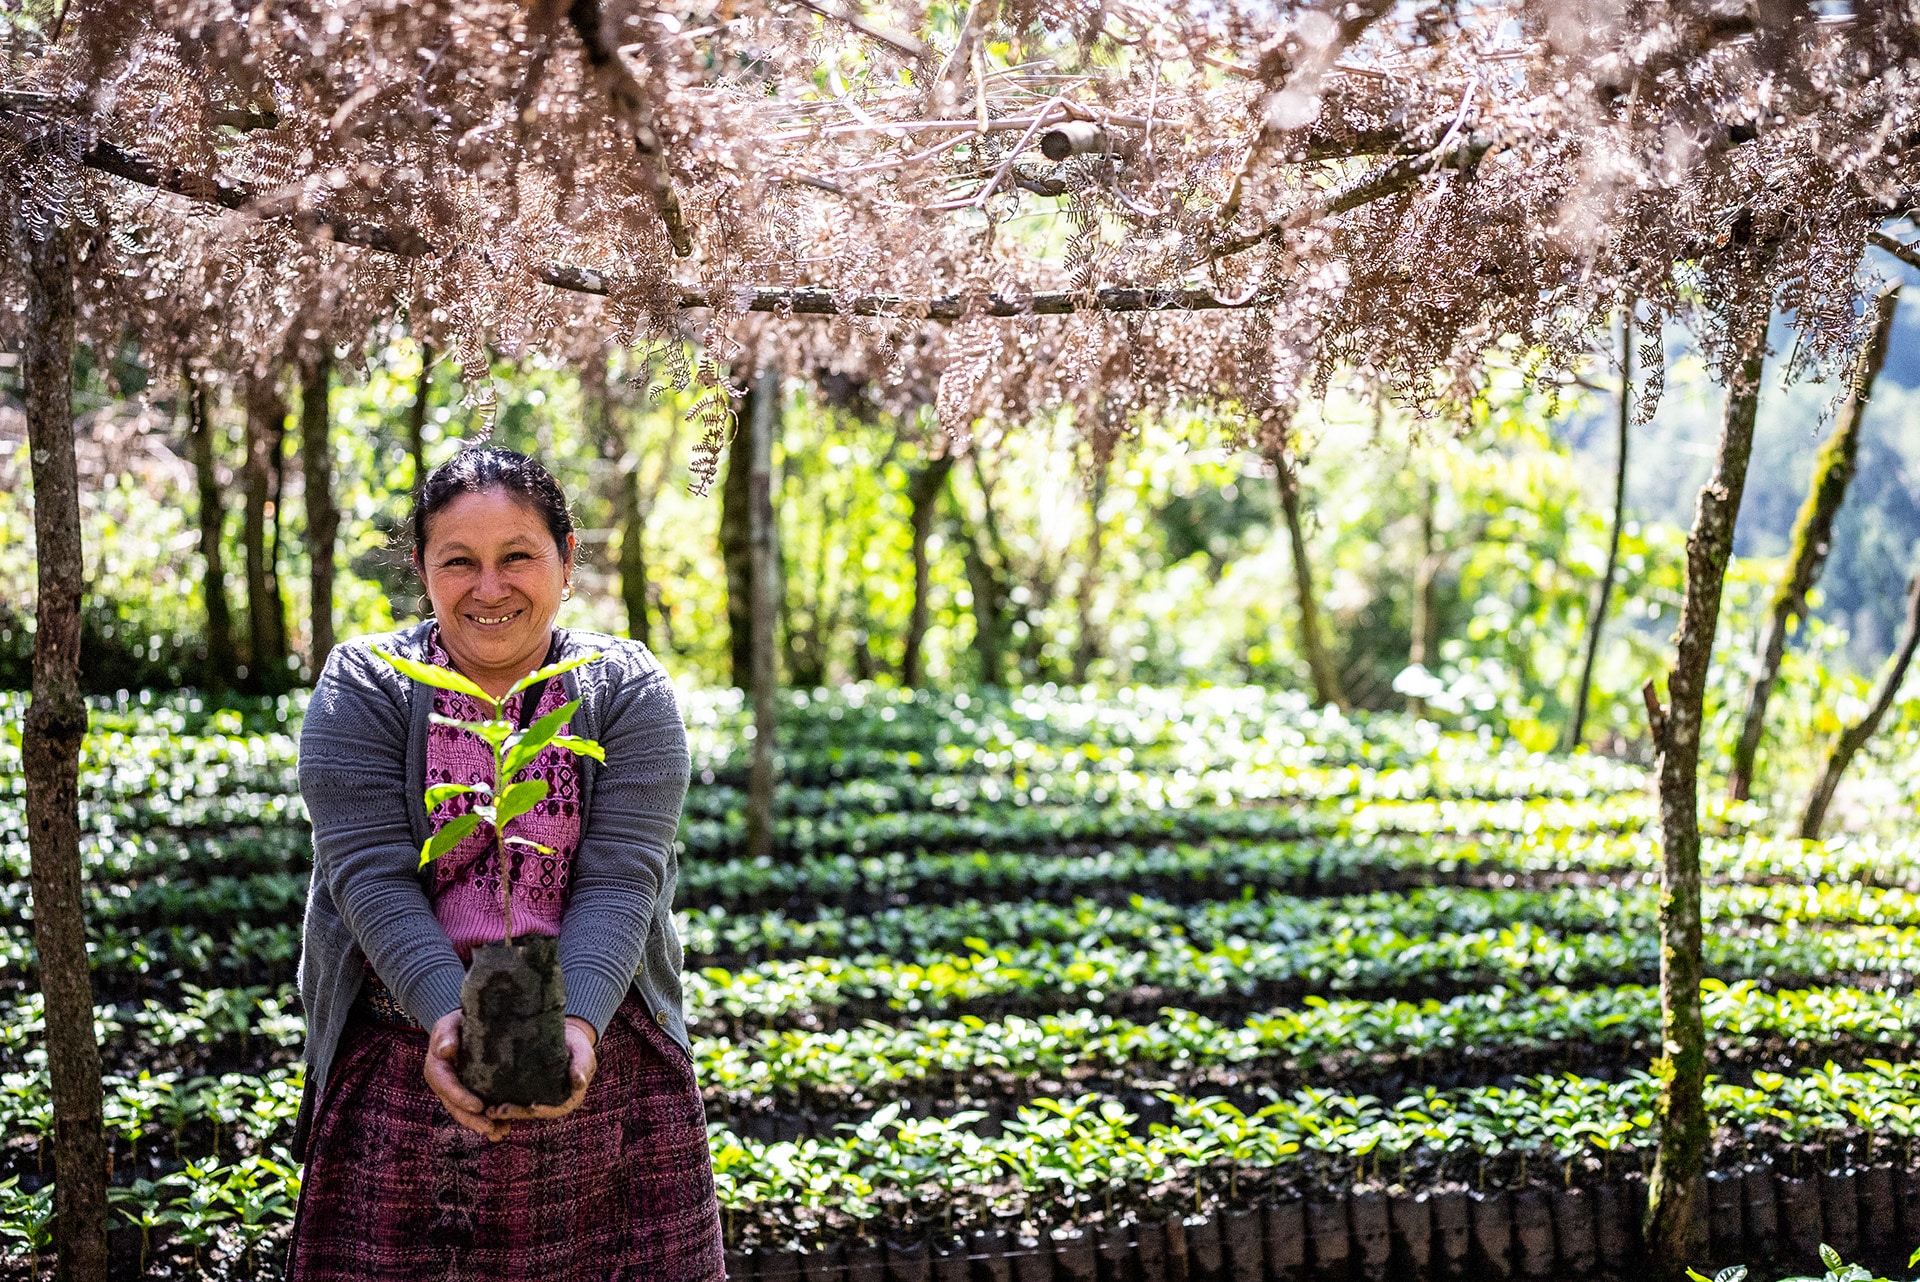  productora muestra con orgullo sus cultivos en Barillas, Guatemala.